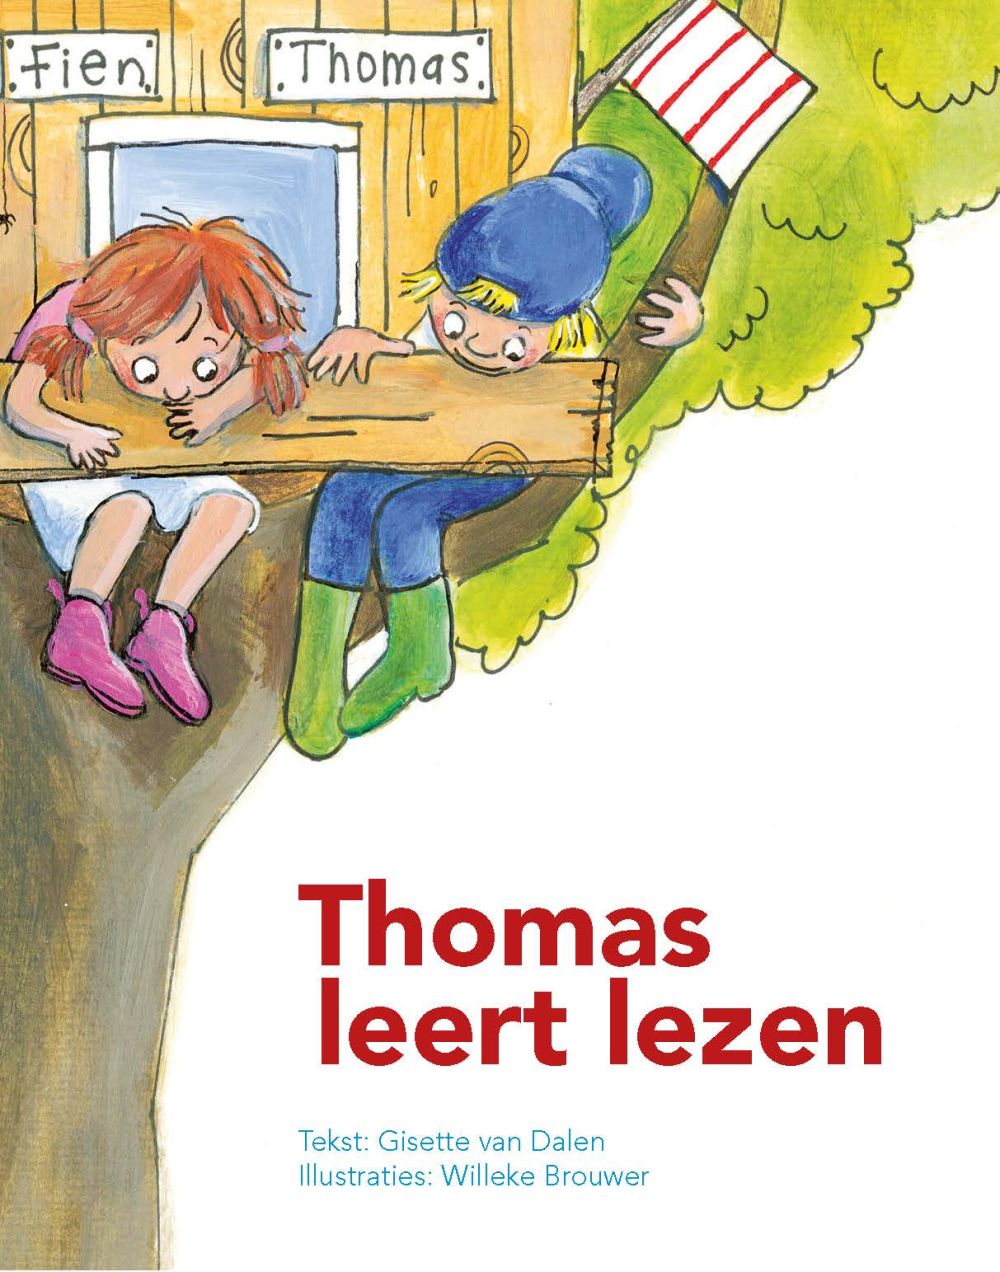 Thomas leert lezen (6)